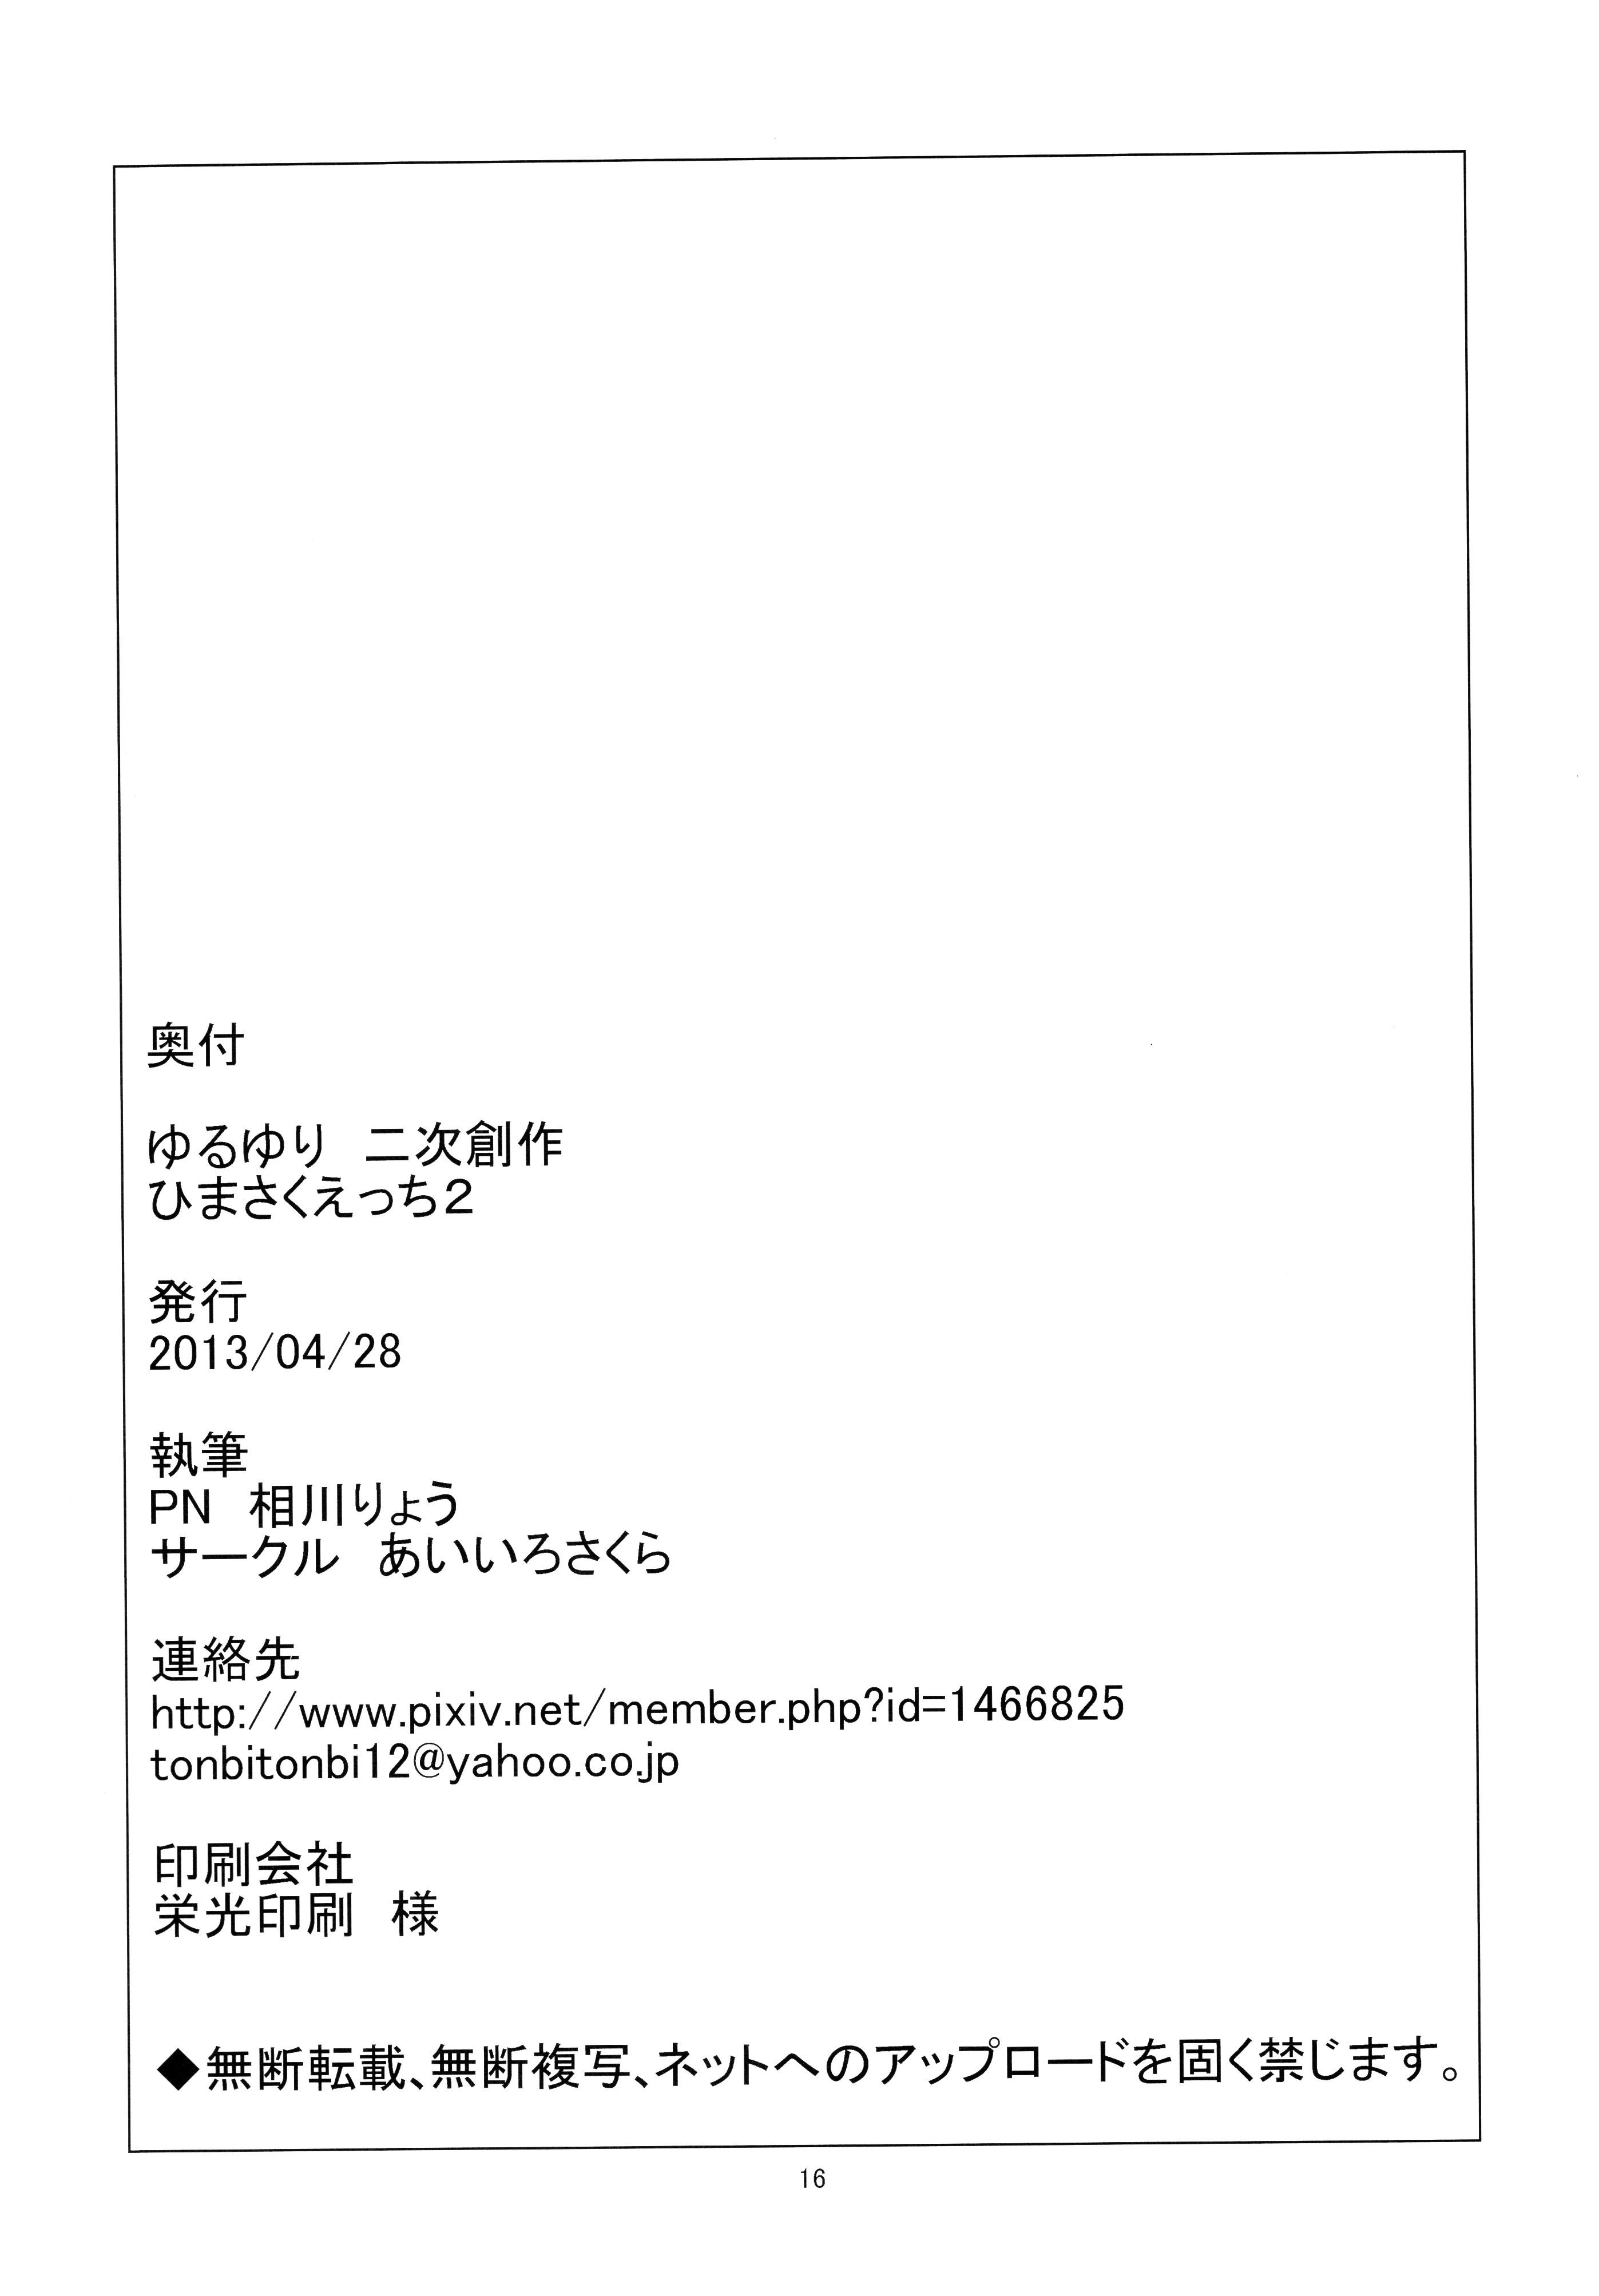 Tributo Himasaku Ecchi 2 - Yuruyuri Emo Gay - Page 18